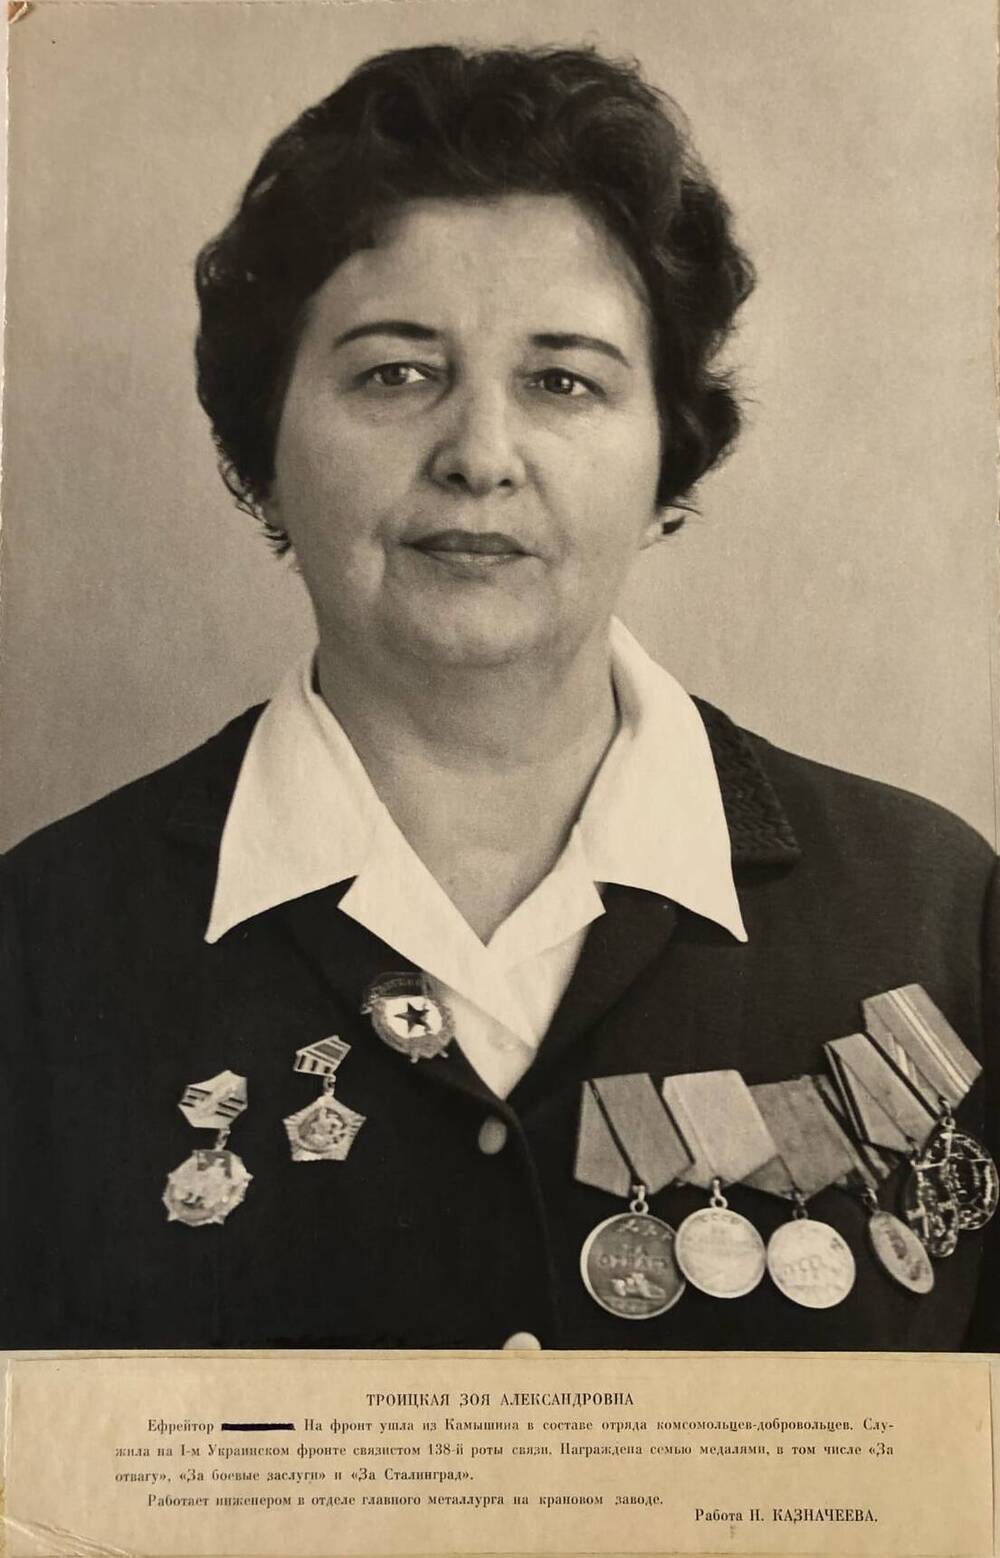 Фотография Троицкой Зои Александровны, участницы Великой Отечественной войны 1941-1945 гг.